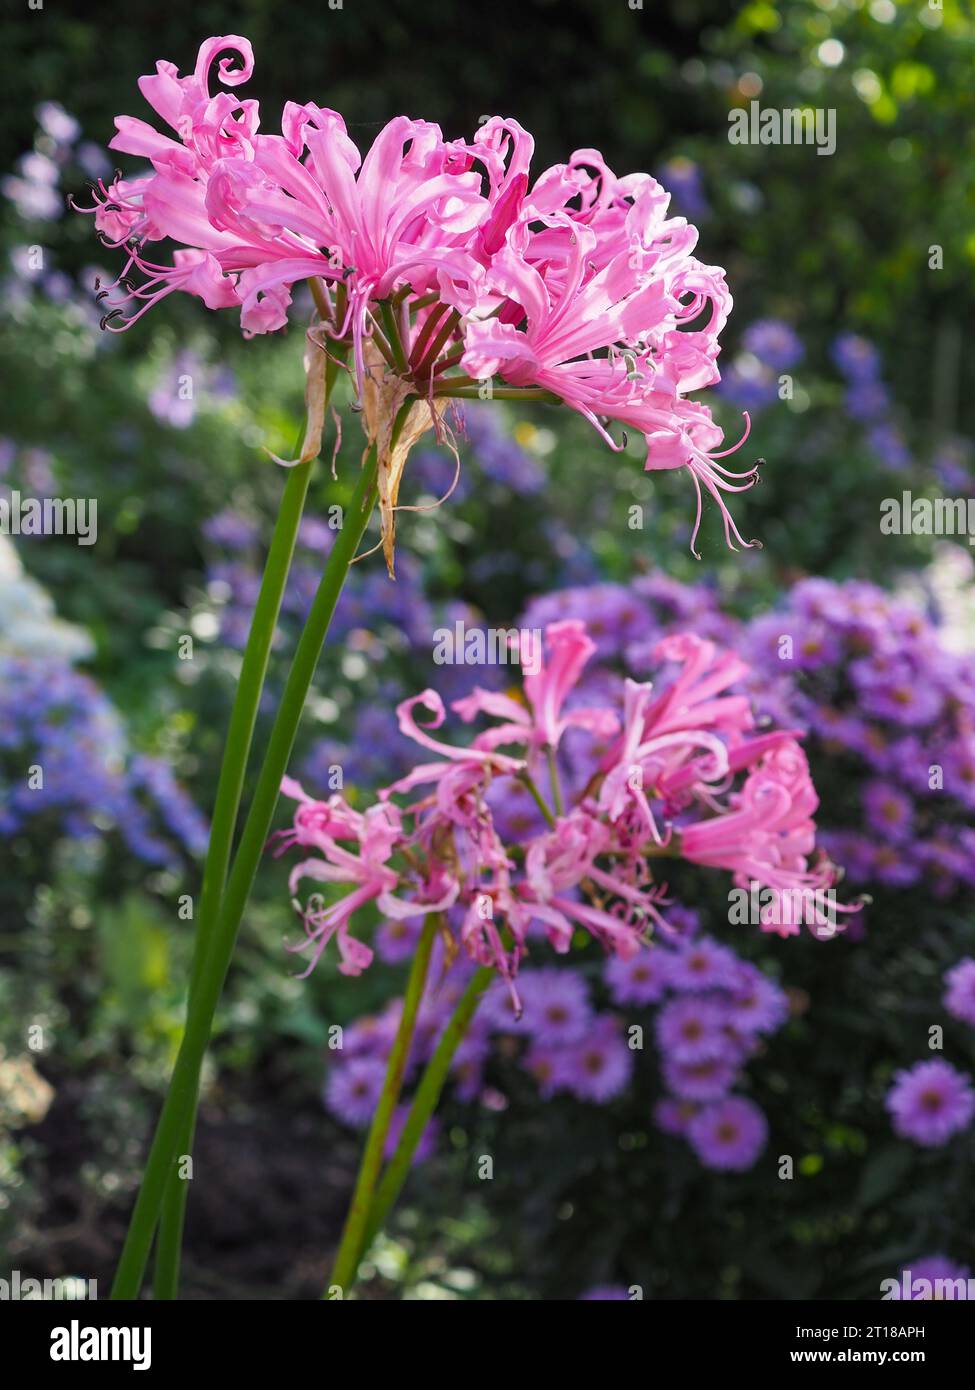 Nahaufnahme der lockigen Blütenblätter einer rosa Nerine bowdenii (Bowden Lily), die im Oktober von einem Sonnenstrahl im Herbst in einer farbenfrohen Gartenkante hervorgehoben wird Stockfoto